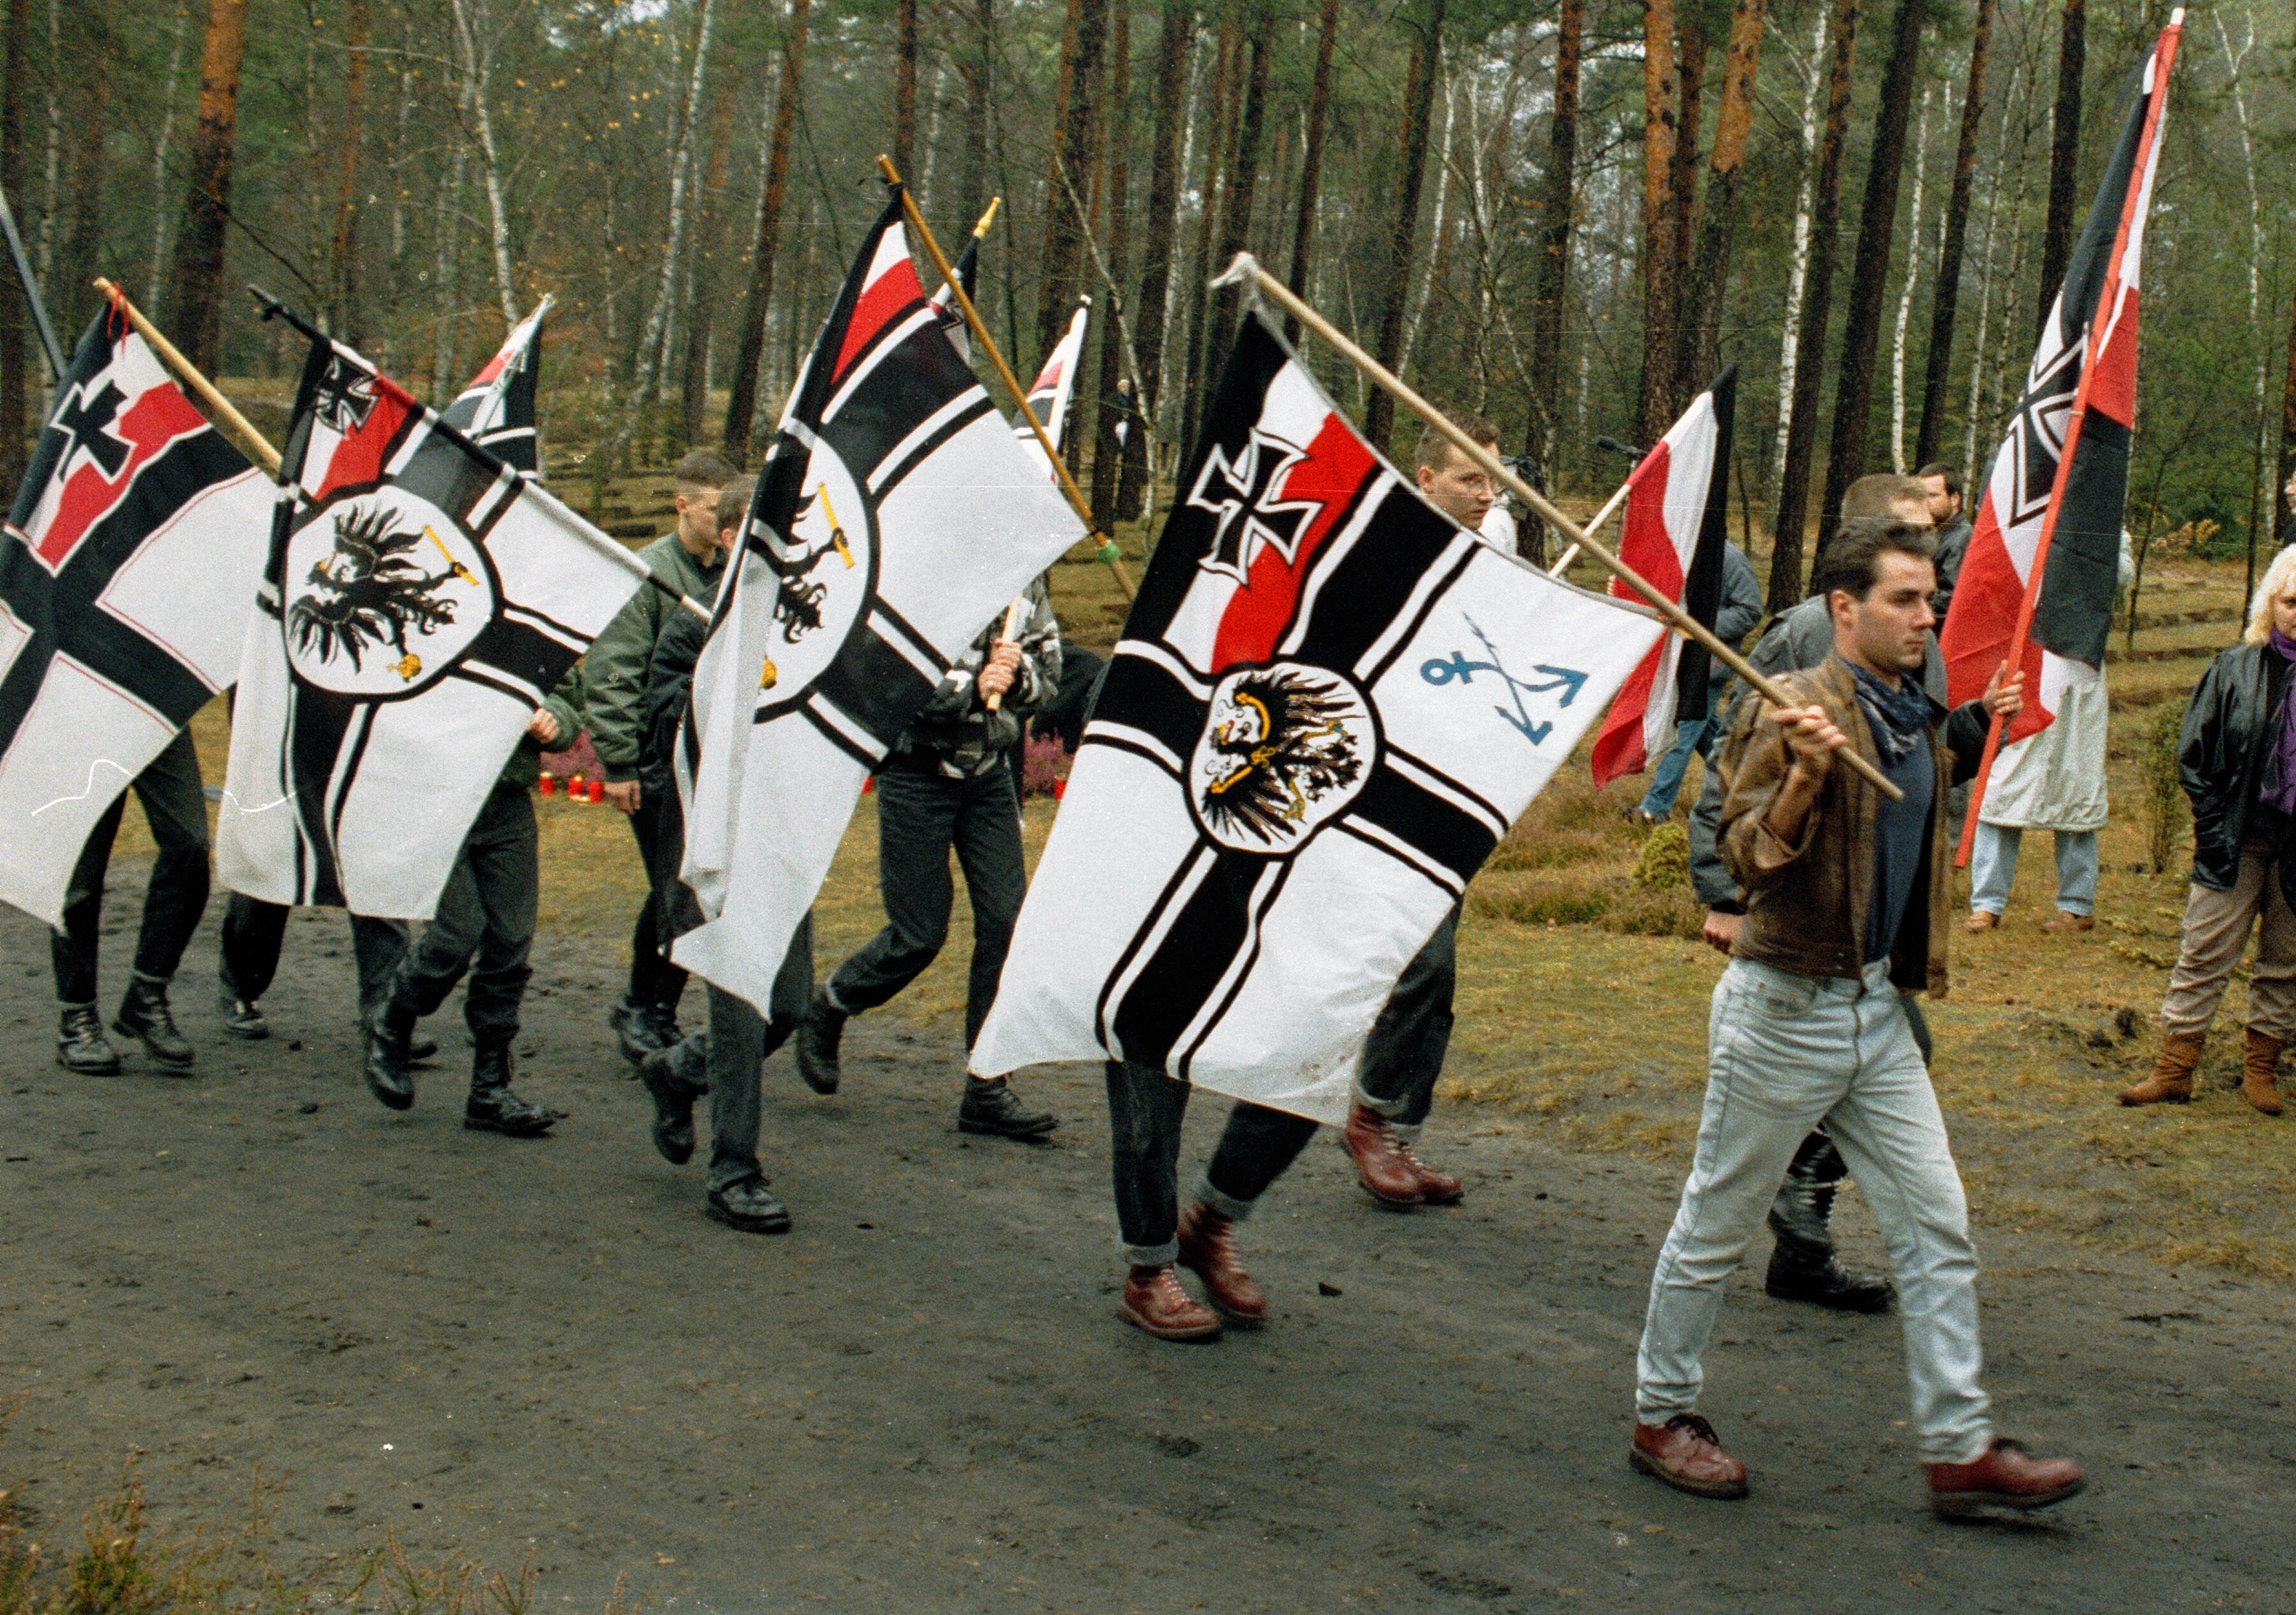 Junge Männer mit Reichskriegsflaggen, die mit einem Demonstrationszug durch den Wald gehen